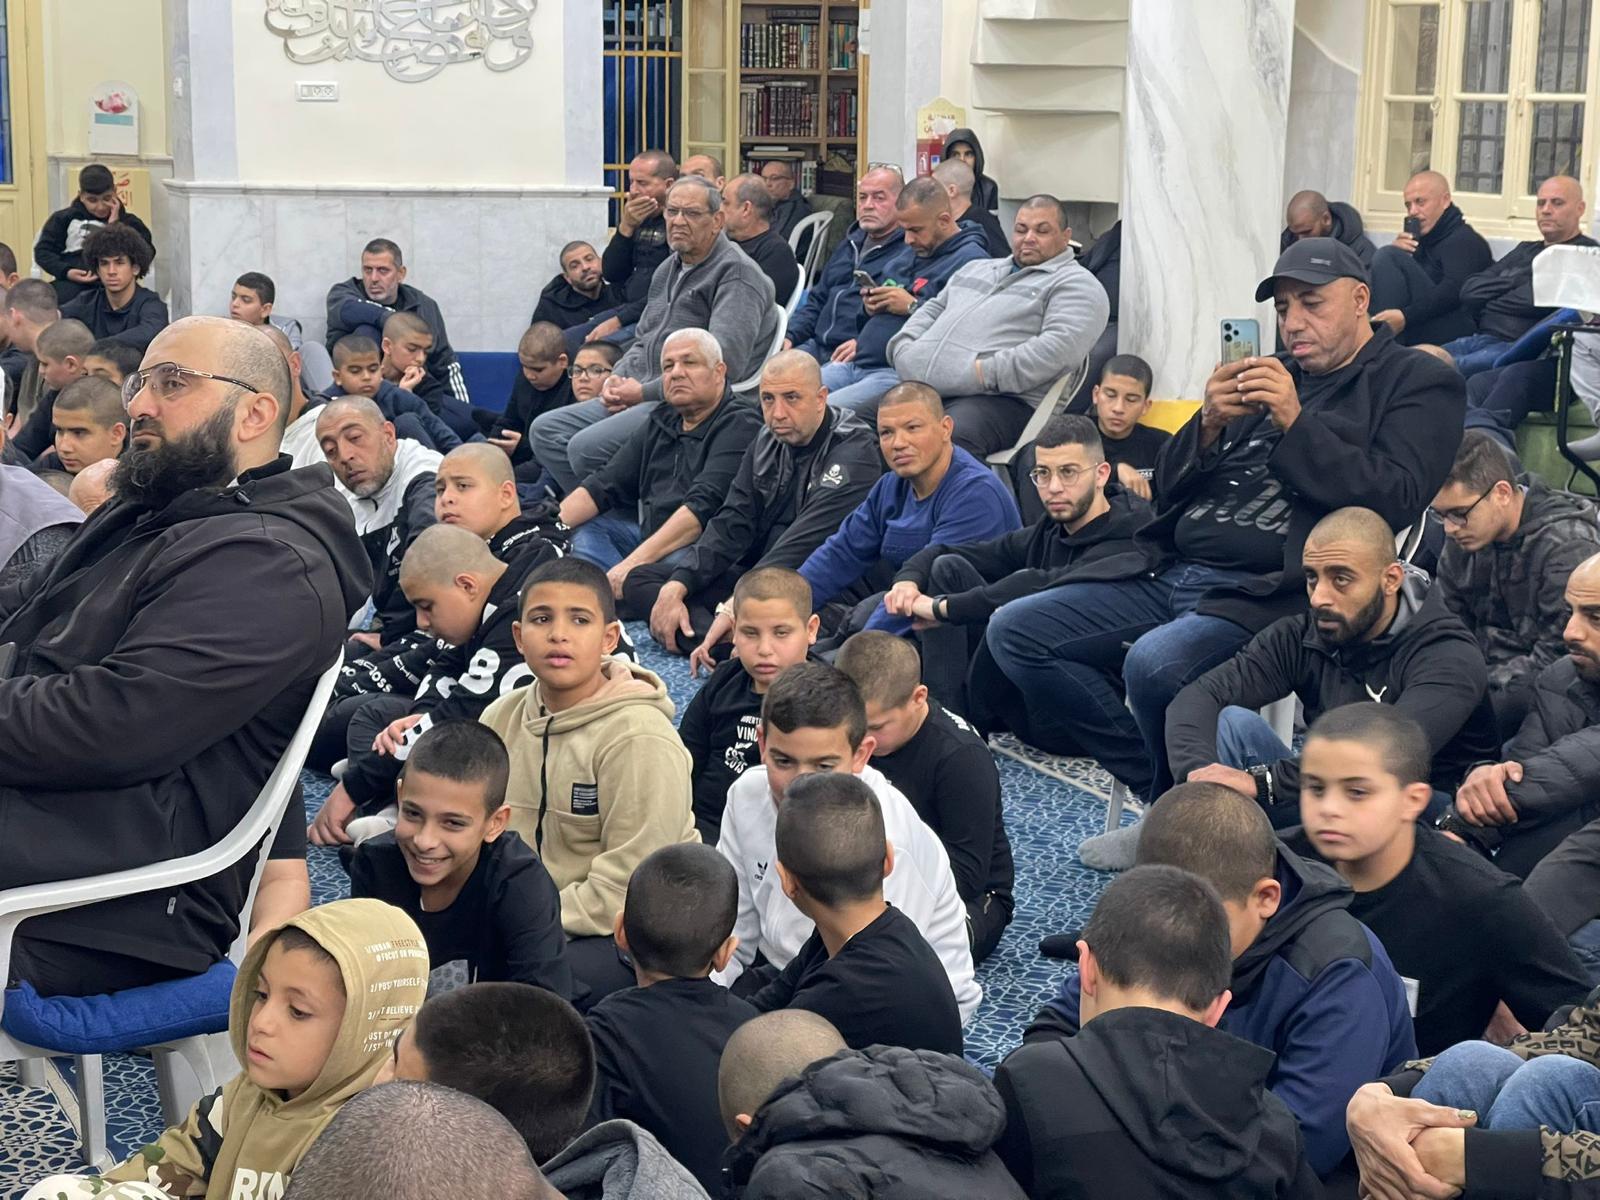 يافا: بالصور إحتفال حاشد لتكريم الفتية المواظبين عصلاة الجماعة في مسجد النزهة